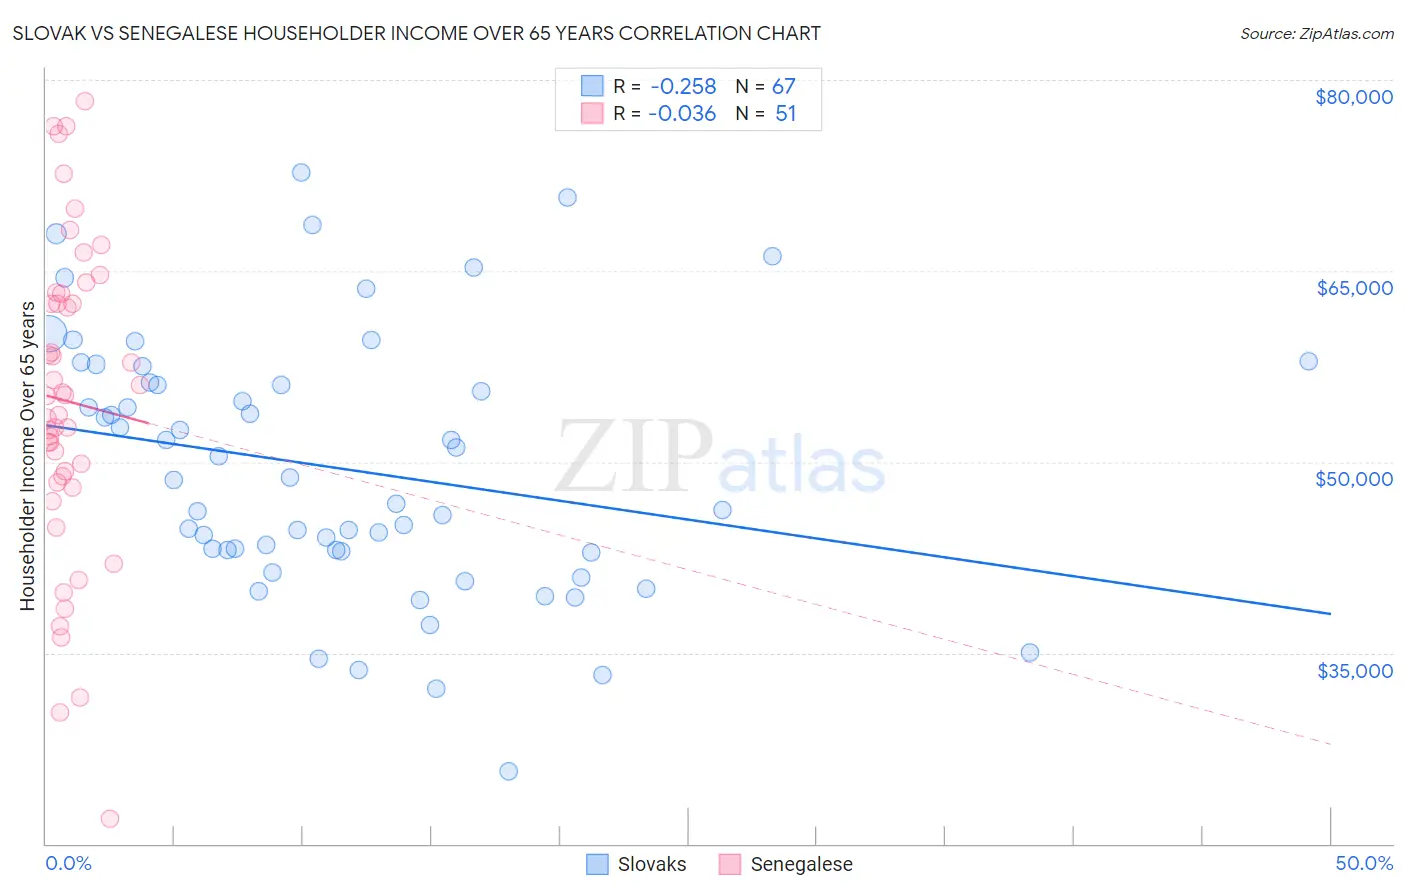 Slovak vs Senegalese Householder Income Over 65 years